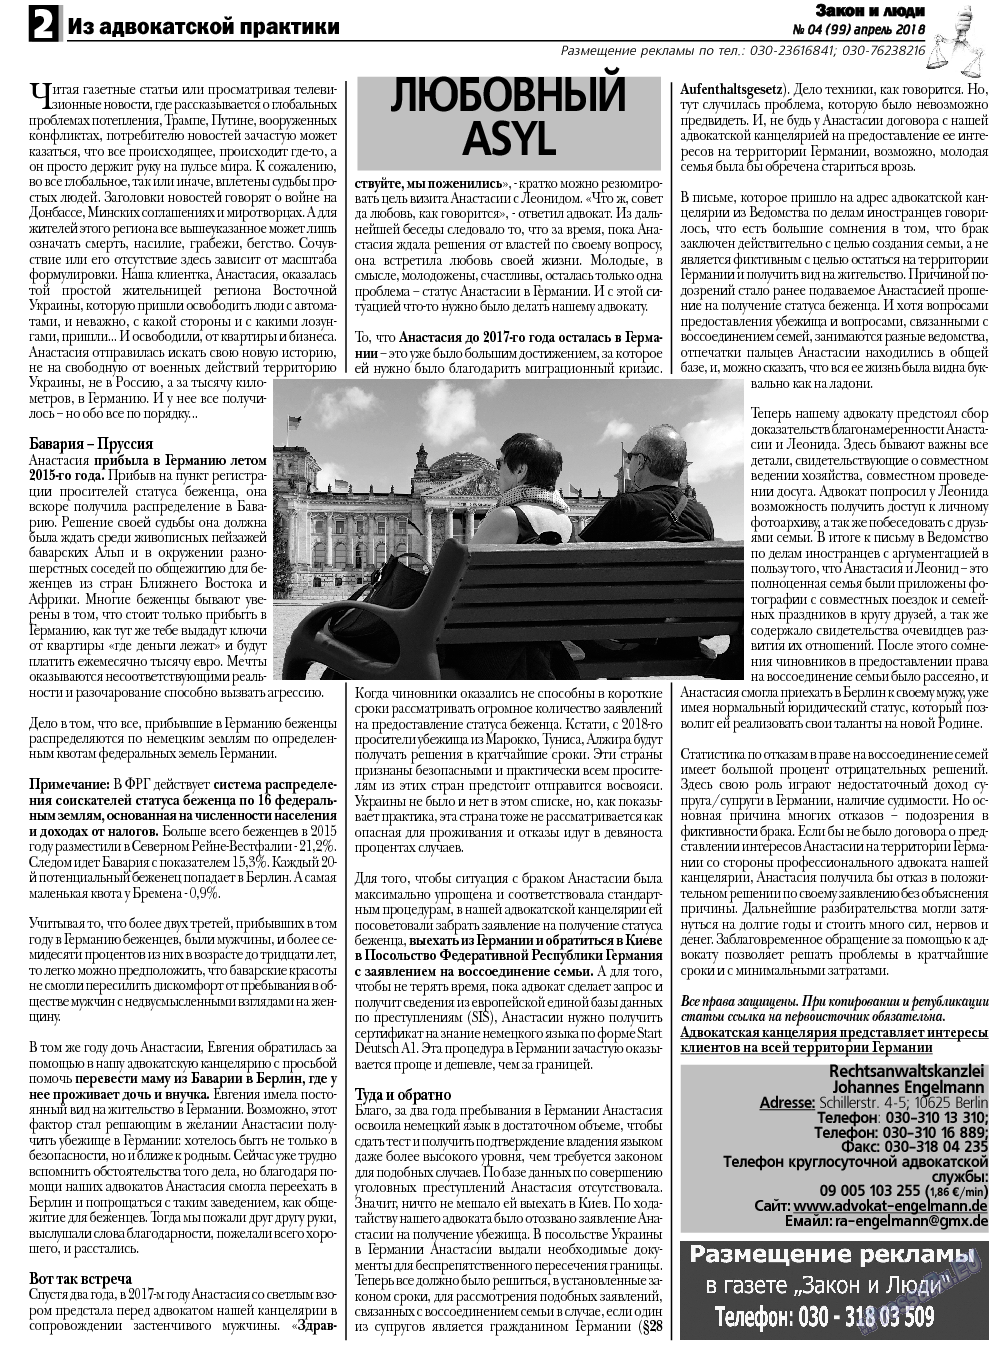 Закон и люди, газета. 2018 №4 стр.2